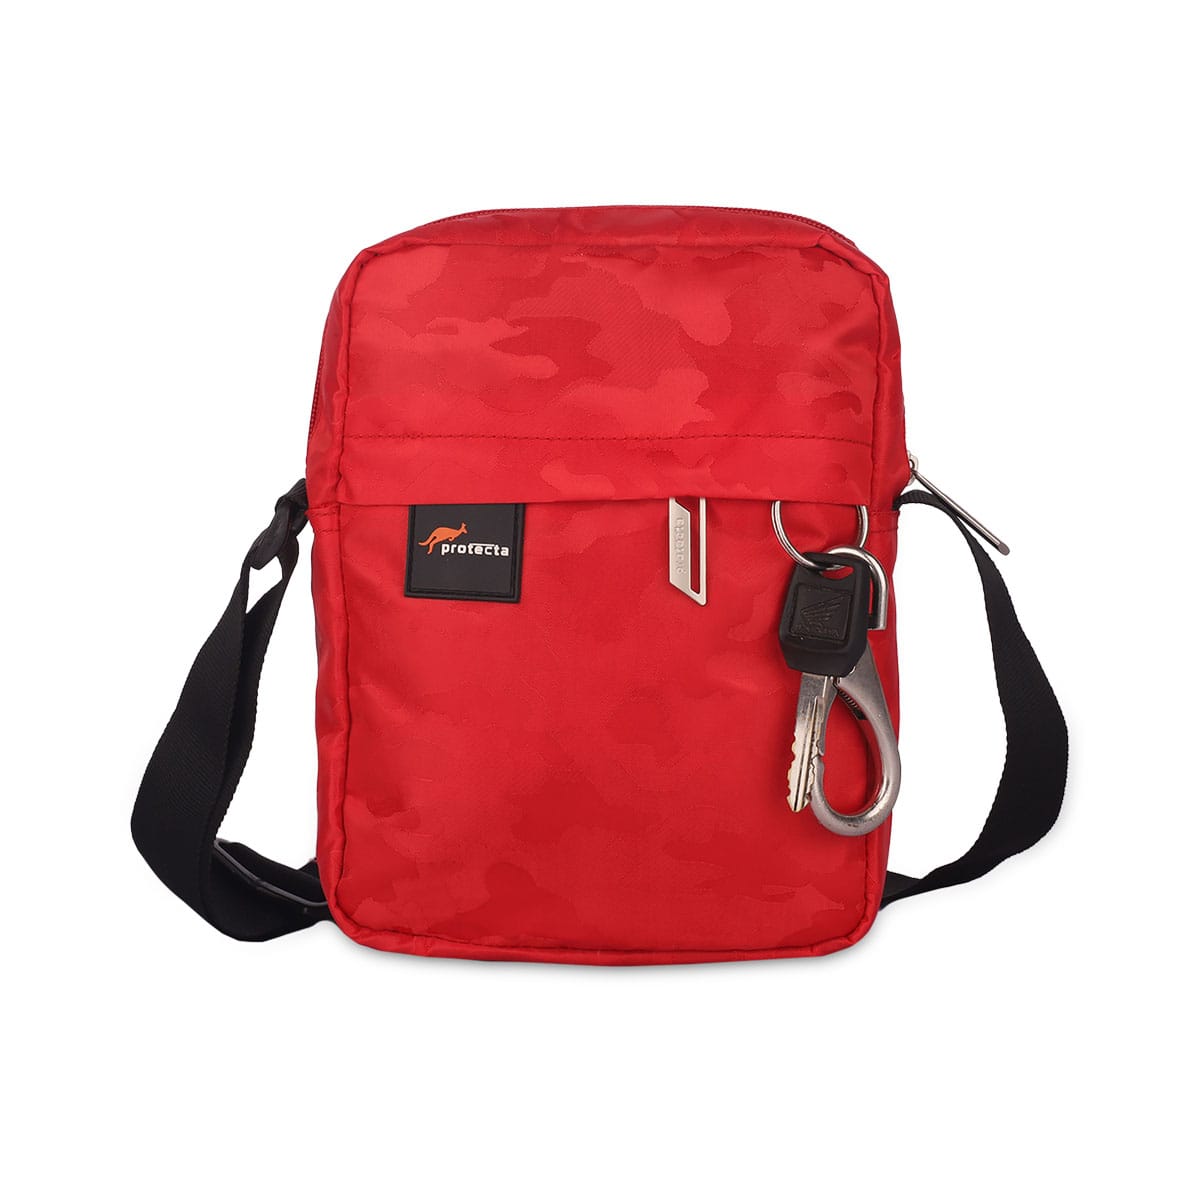 adidas National Sling Backpack - Black | Unisex Lifestyle | adidas US